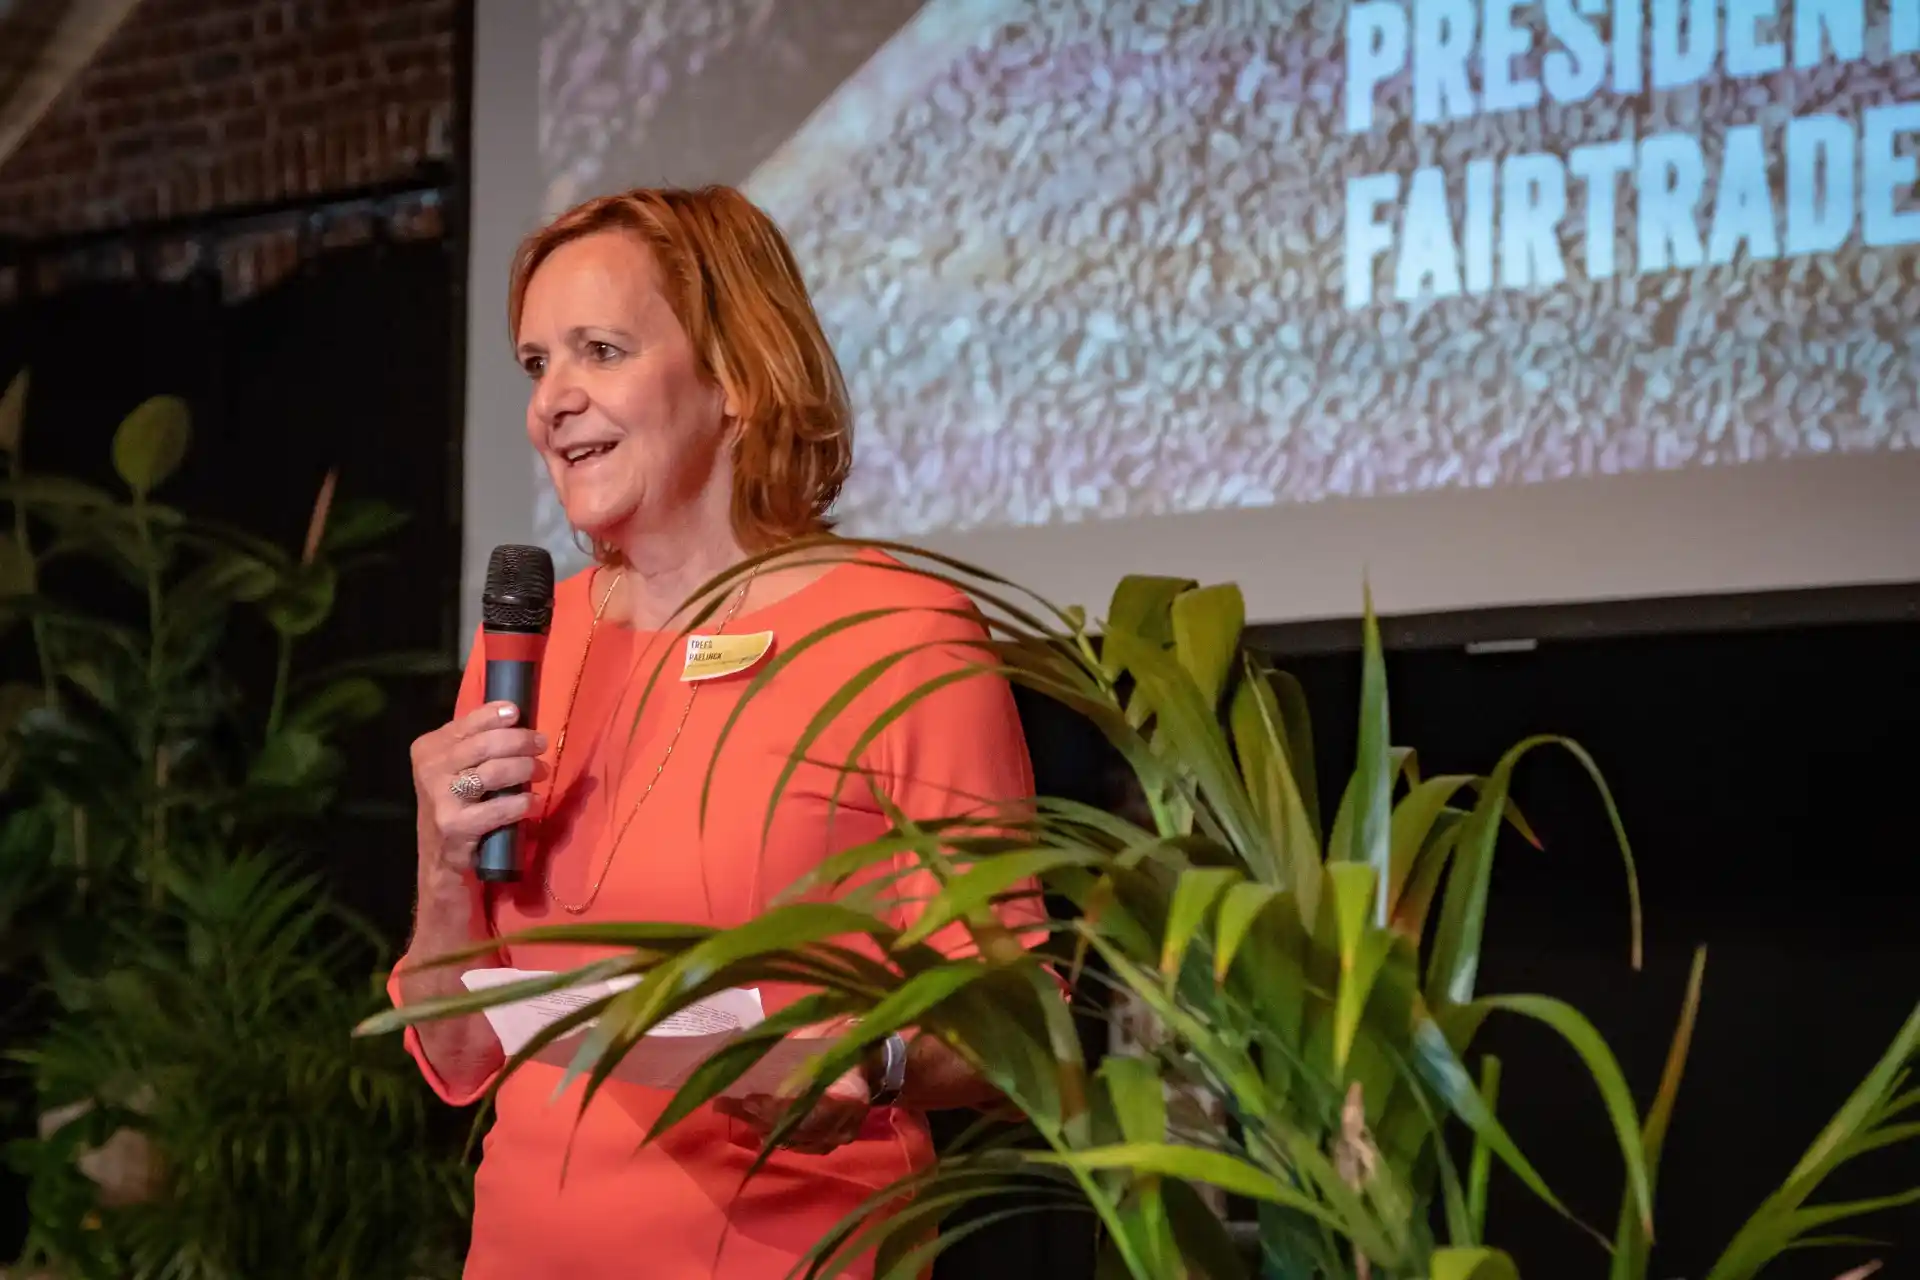 De Voorzitter: Trees Paelinck – Fairtrade Belgium